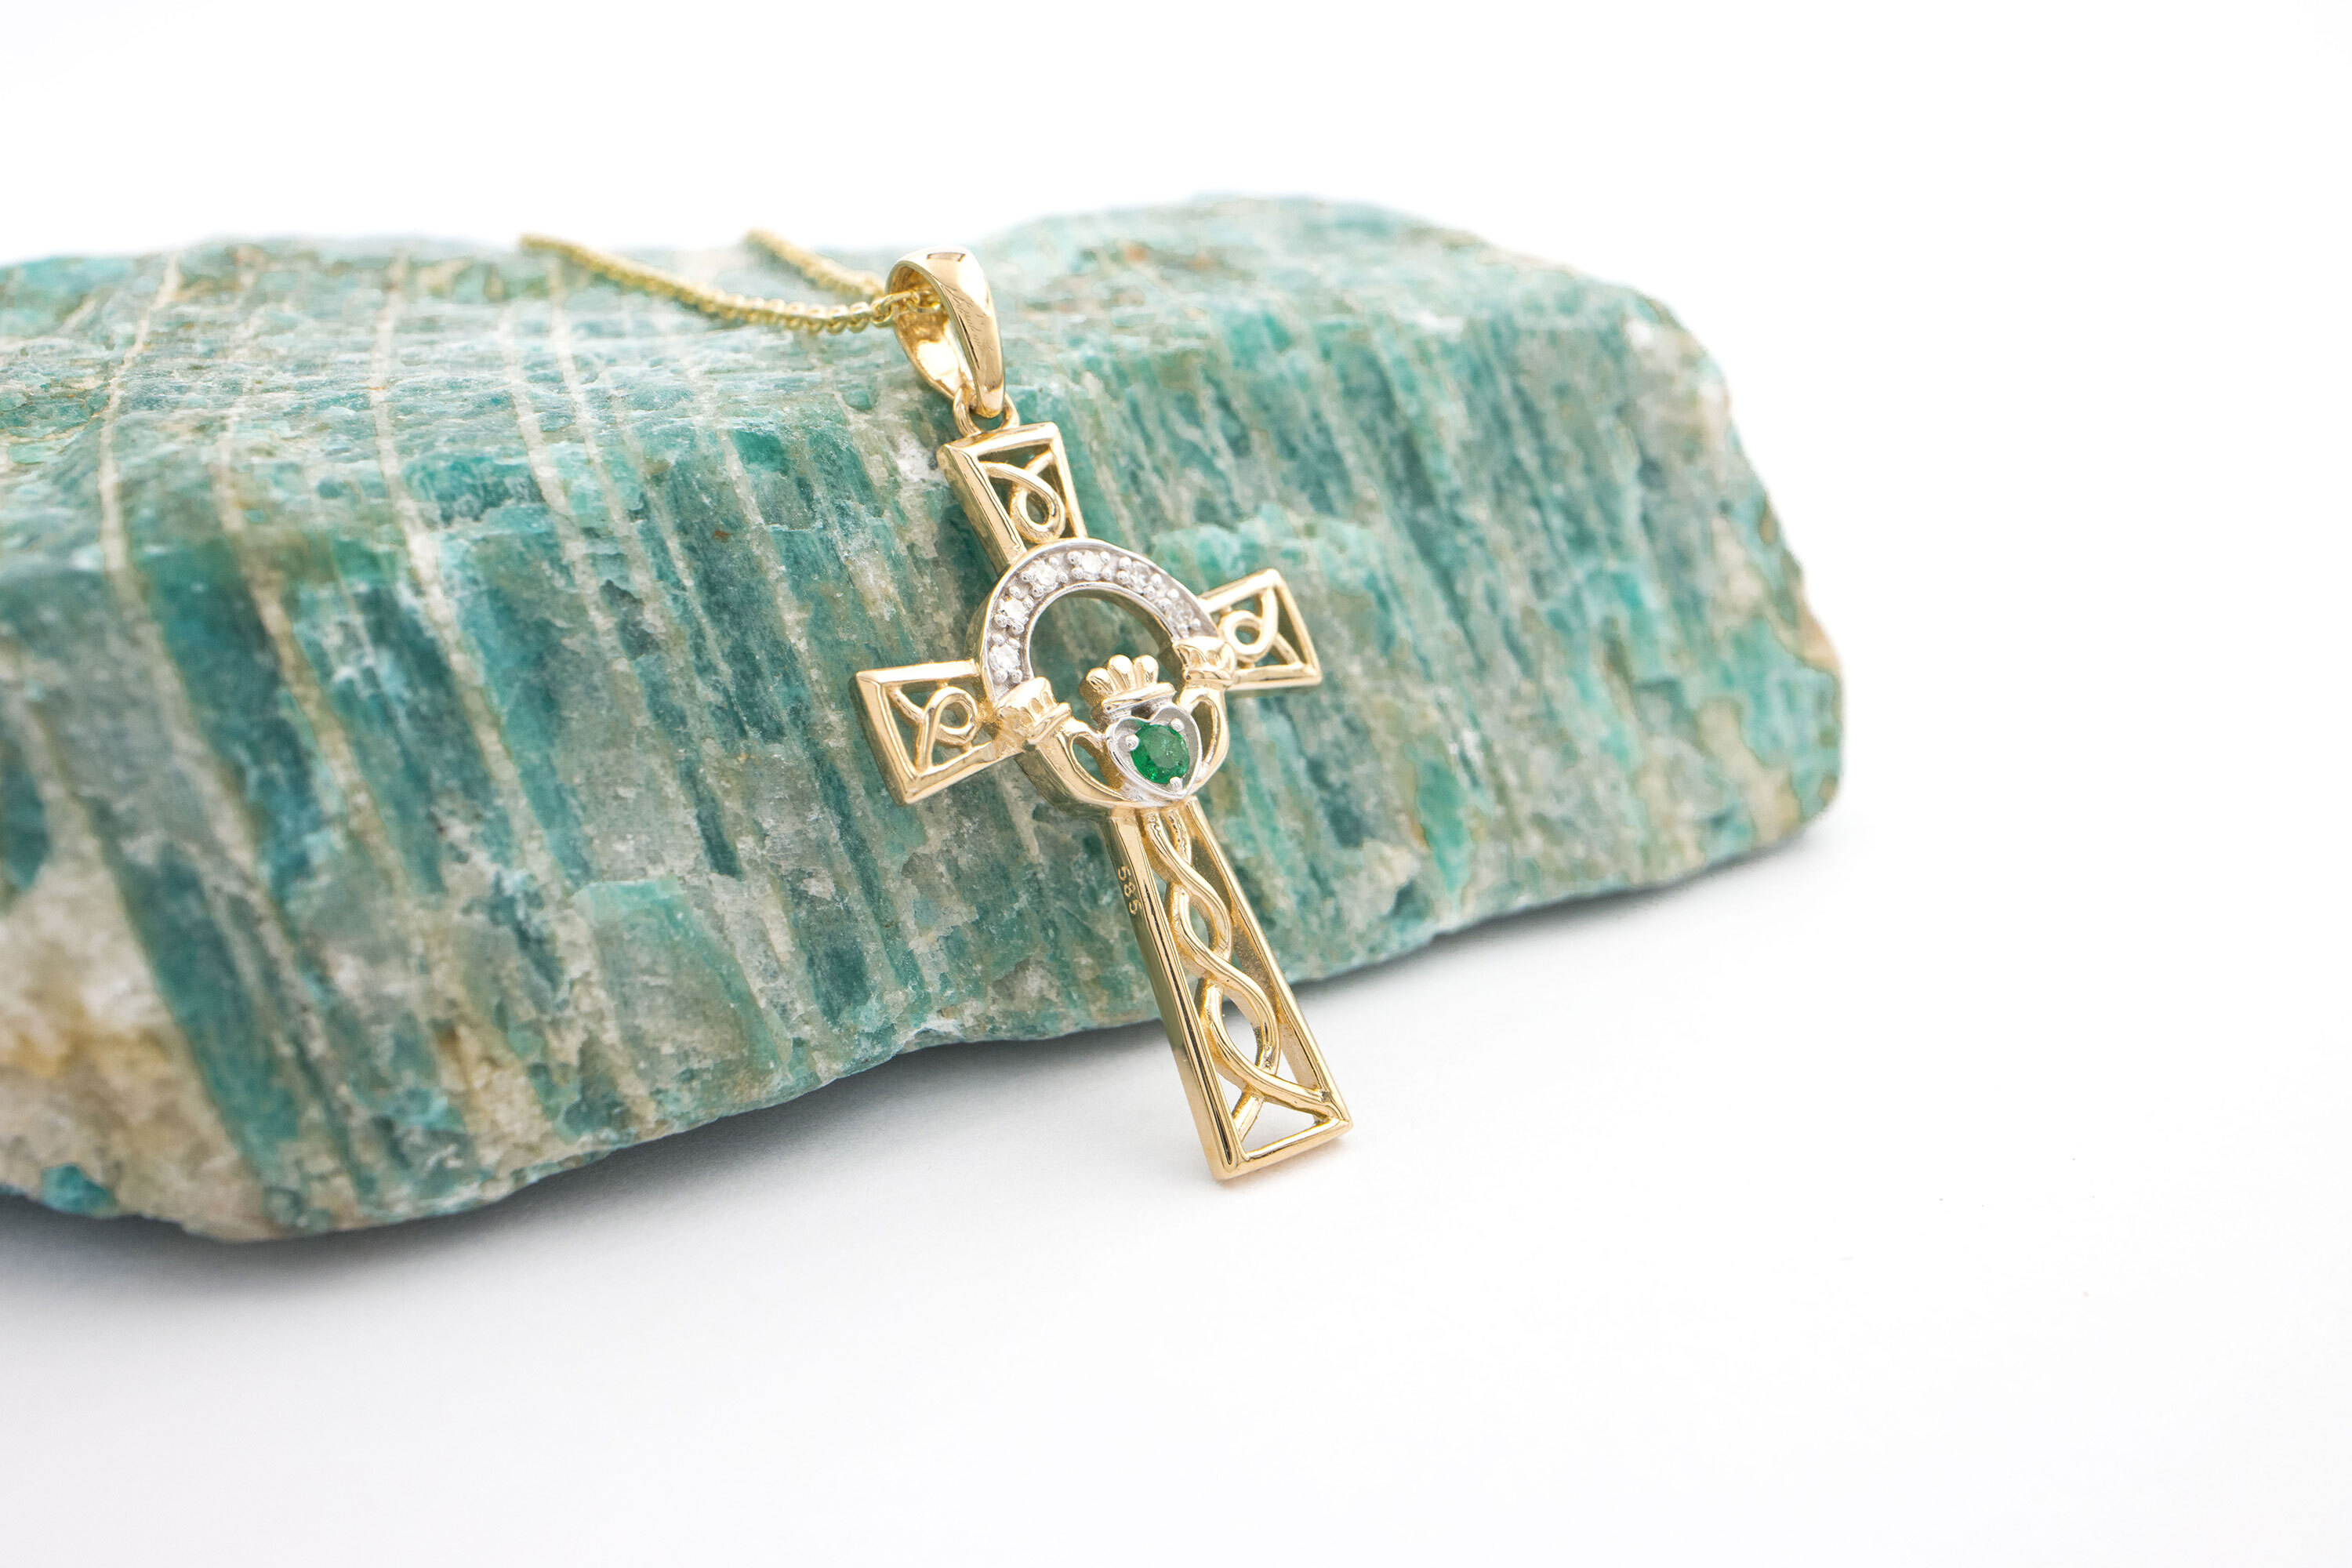 Emerald And Brilliant Cut Diamond Cross Pendant On Chain